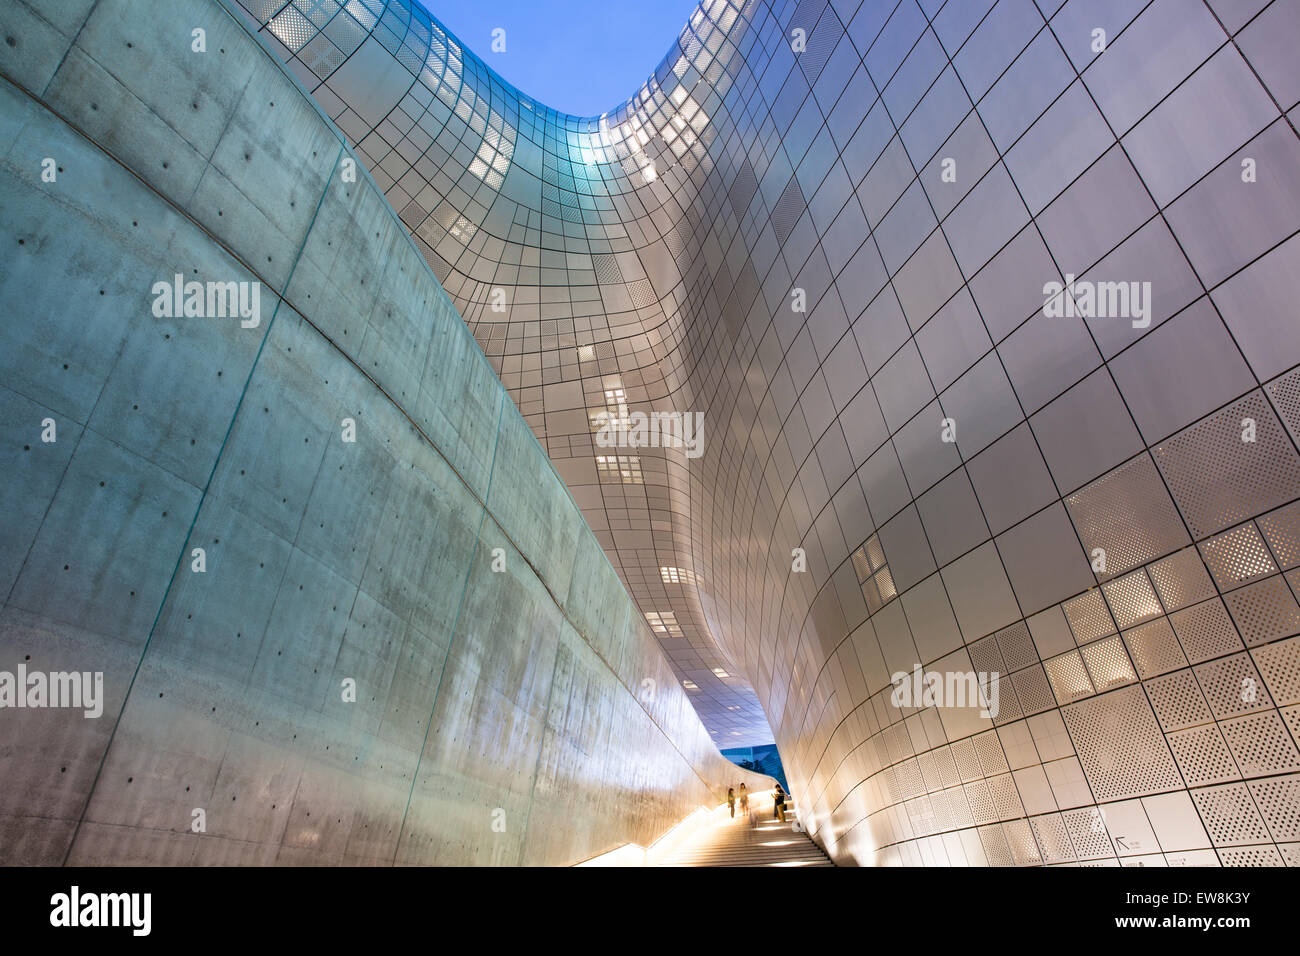 Séoul, République de Corée - 15 août 2014 : l'architecture moderne de l'hôtel de Dongdaemun nuit le 15 août 2014, Séoul, Corée. Banque D'Images